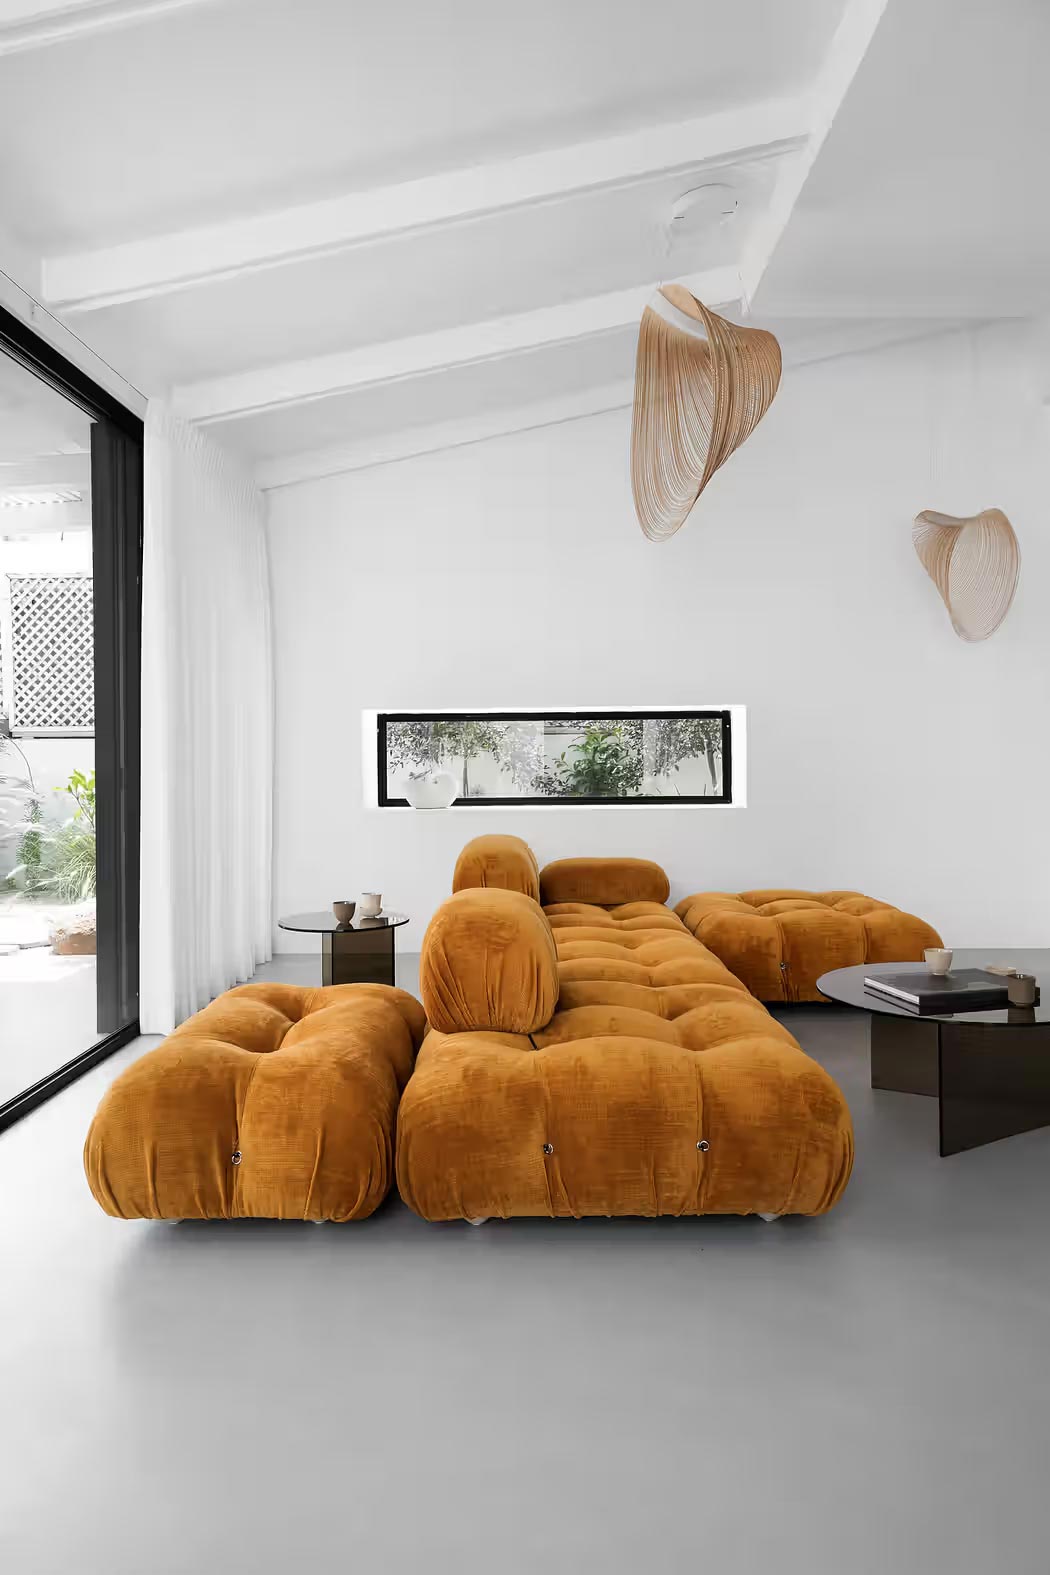 Ontwerper Yael Perry koos voor een strakke naadloze vloer voor dit modern minimalistisch interieurontwerp. Met een houten vloer zou het er heel anders uitzien. | Fotografie: Karin Ravenna